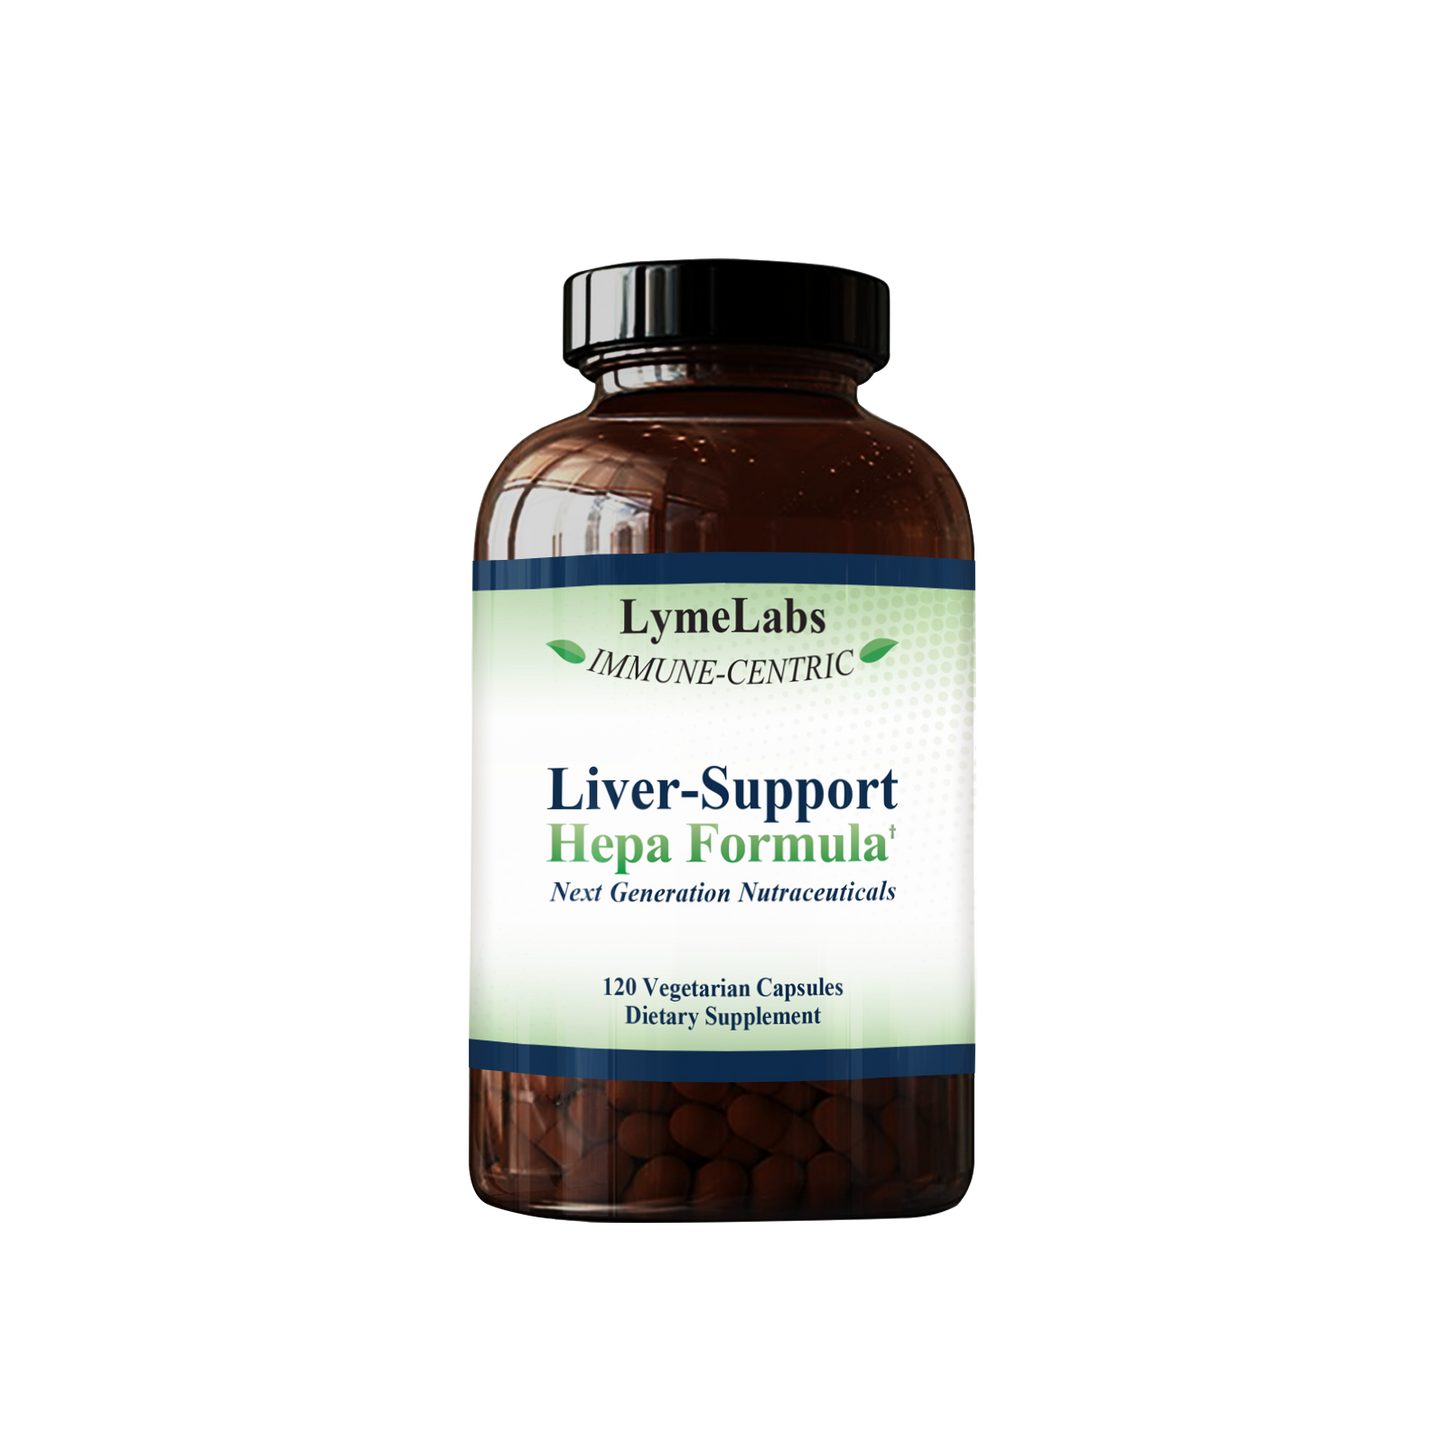 Liver-Support Hepa Formula